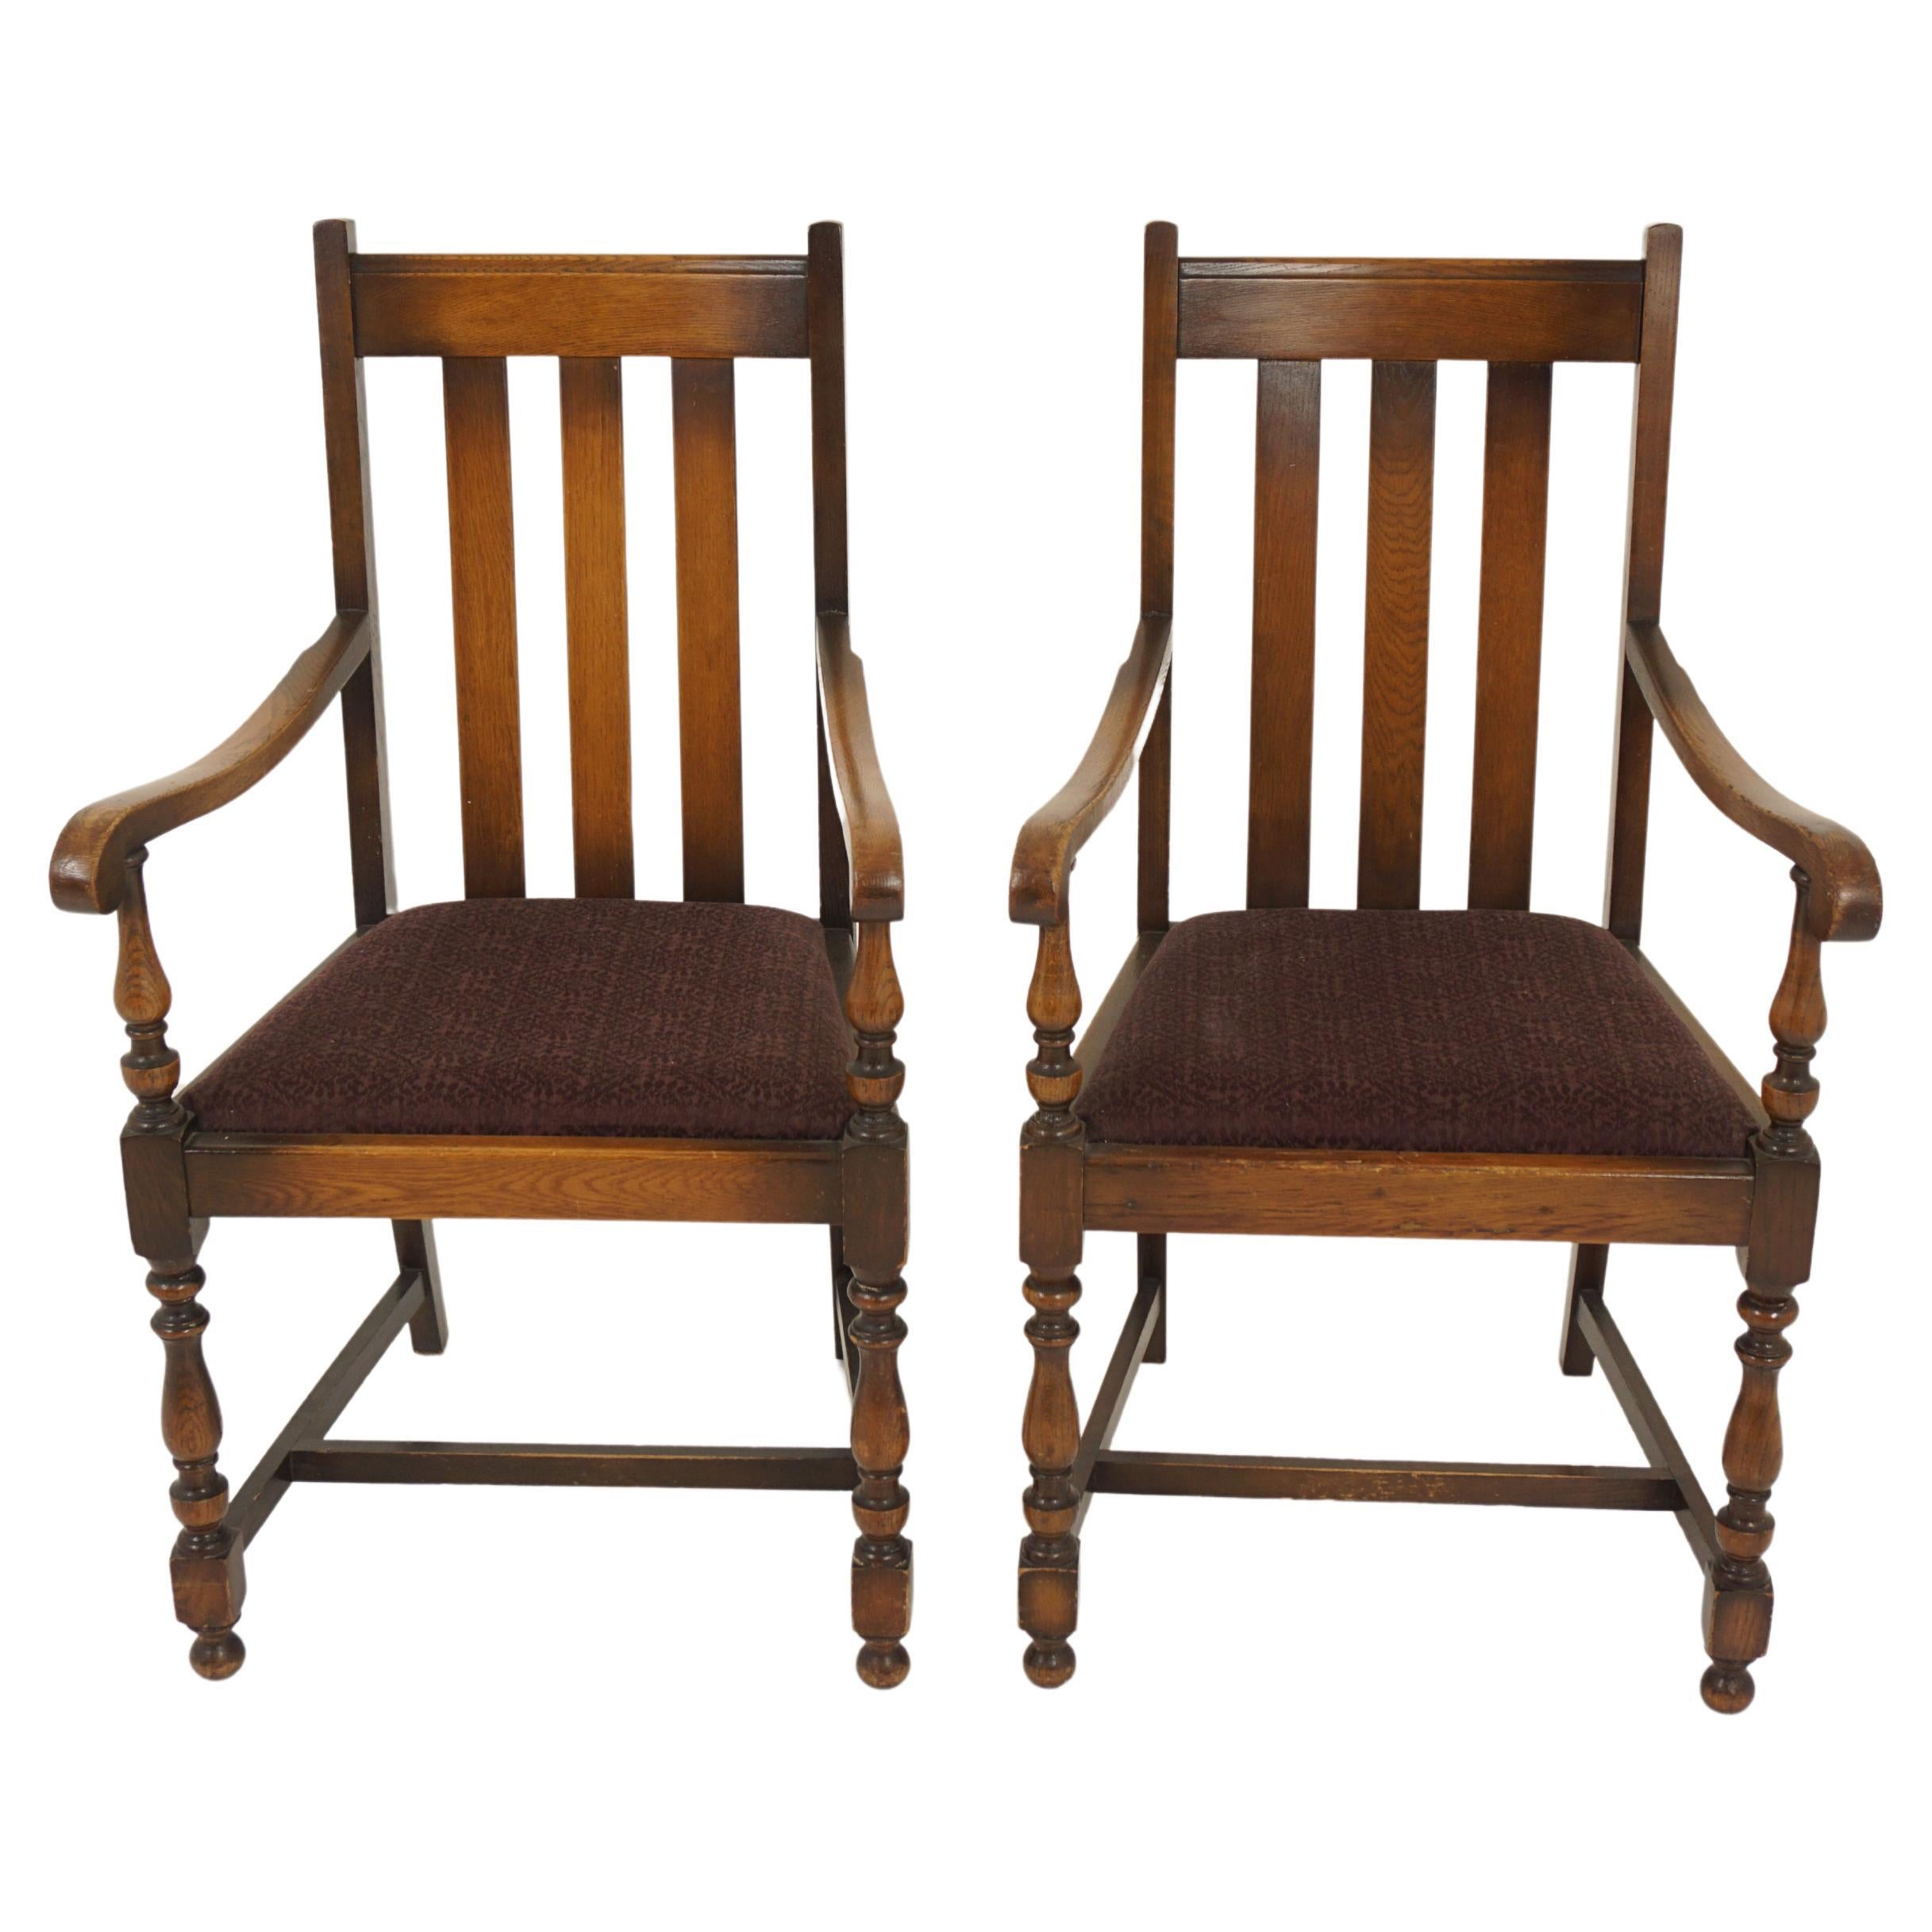 Paar Vintage-Stühle aus massivem Eichenholz mit hoher Rückenlehne, Lift-Out-Stühle, Schottland 1920, H1202